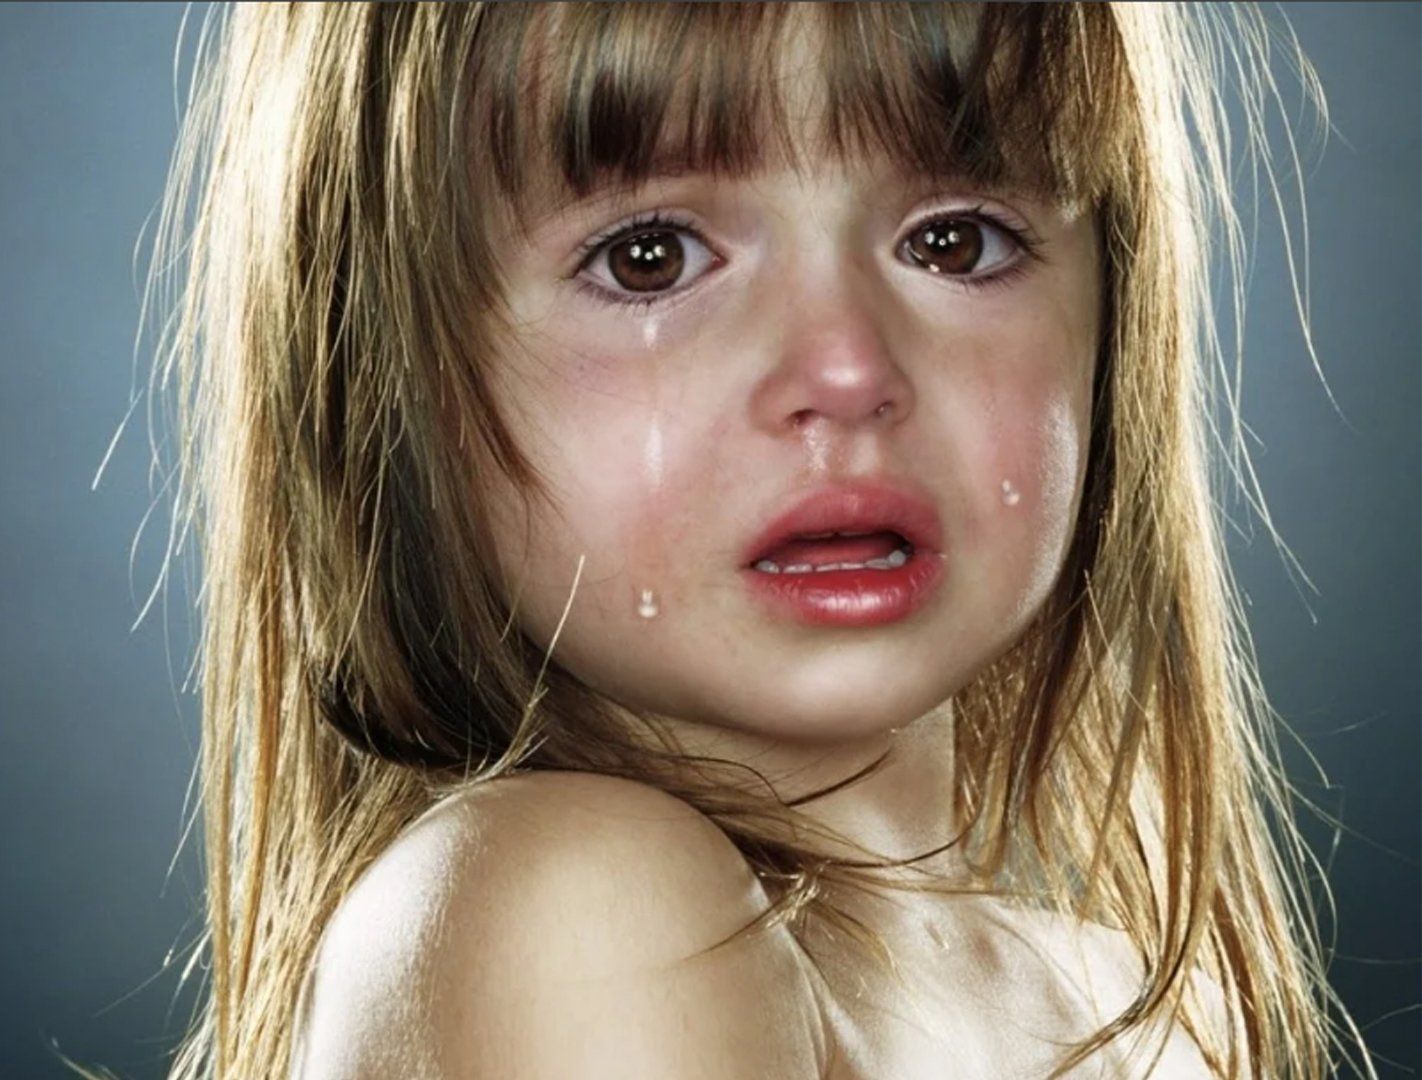 Испугалась плачу. Джилл Гринберг фотограф. Плачущая девочка. Детские слезы.